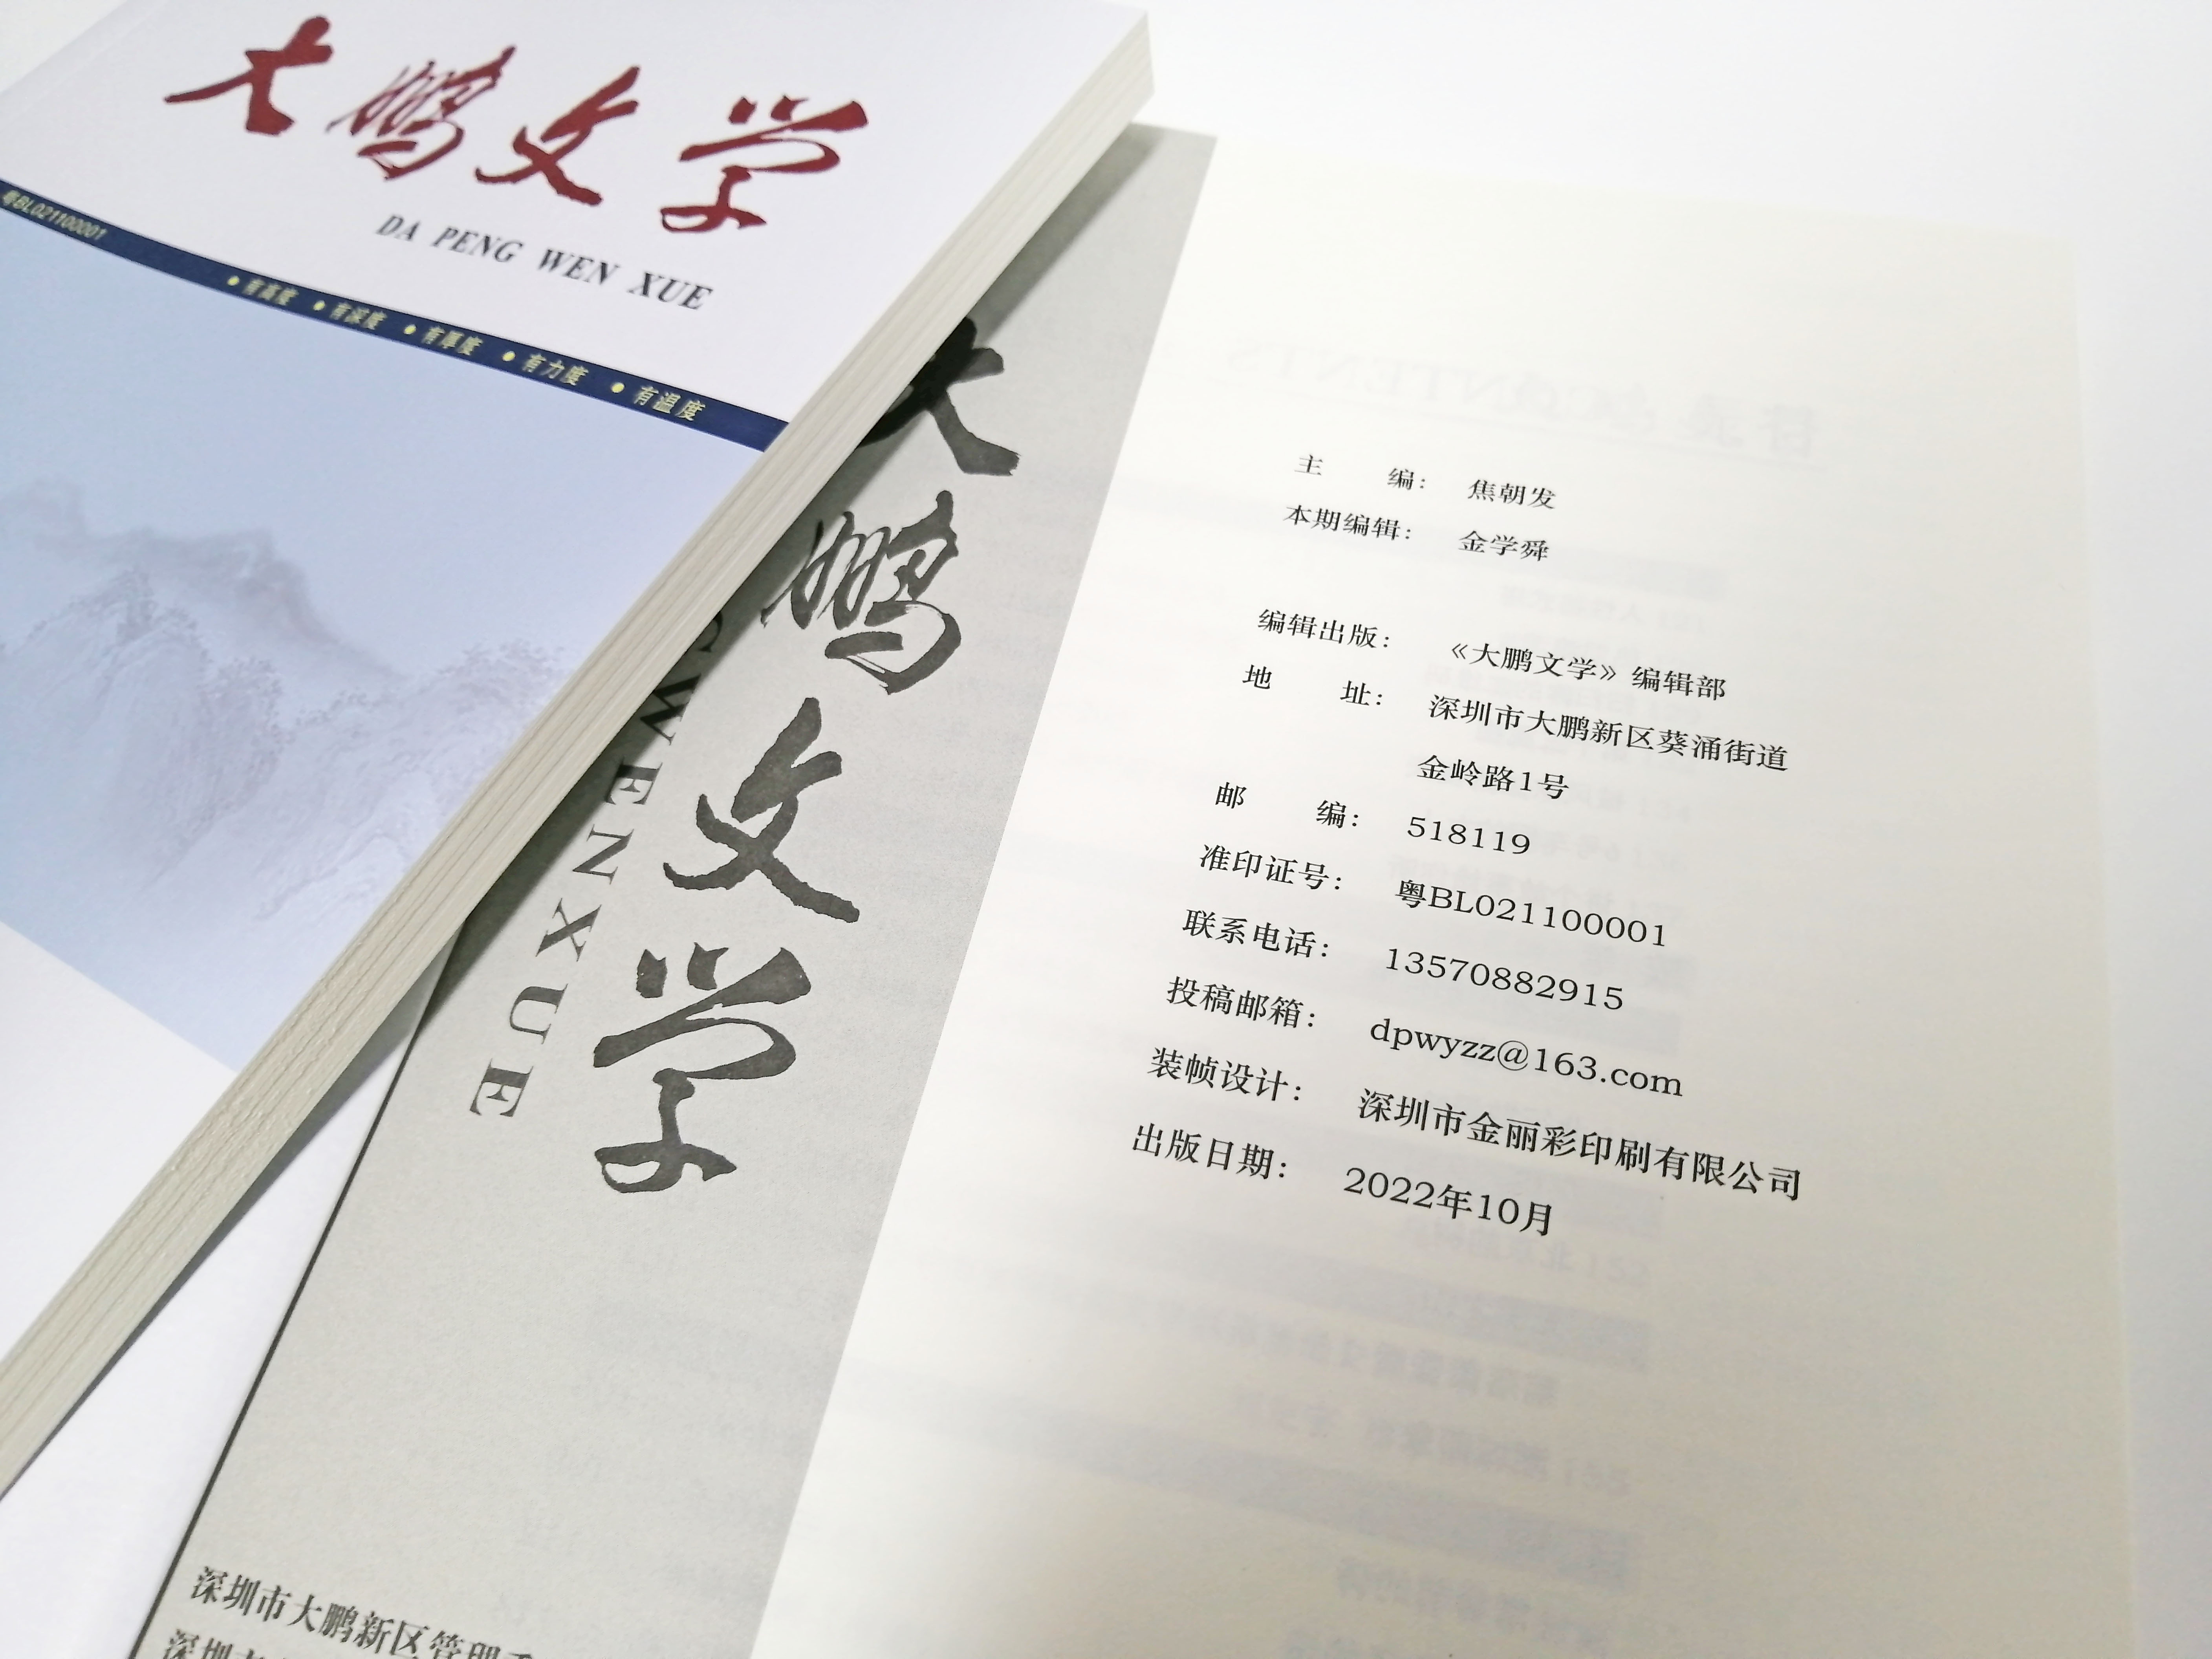 《大鹏文学》期刊由深圳金丽彩印刷成功印制